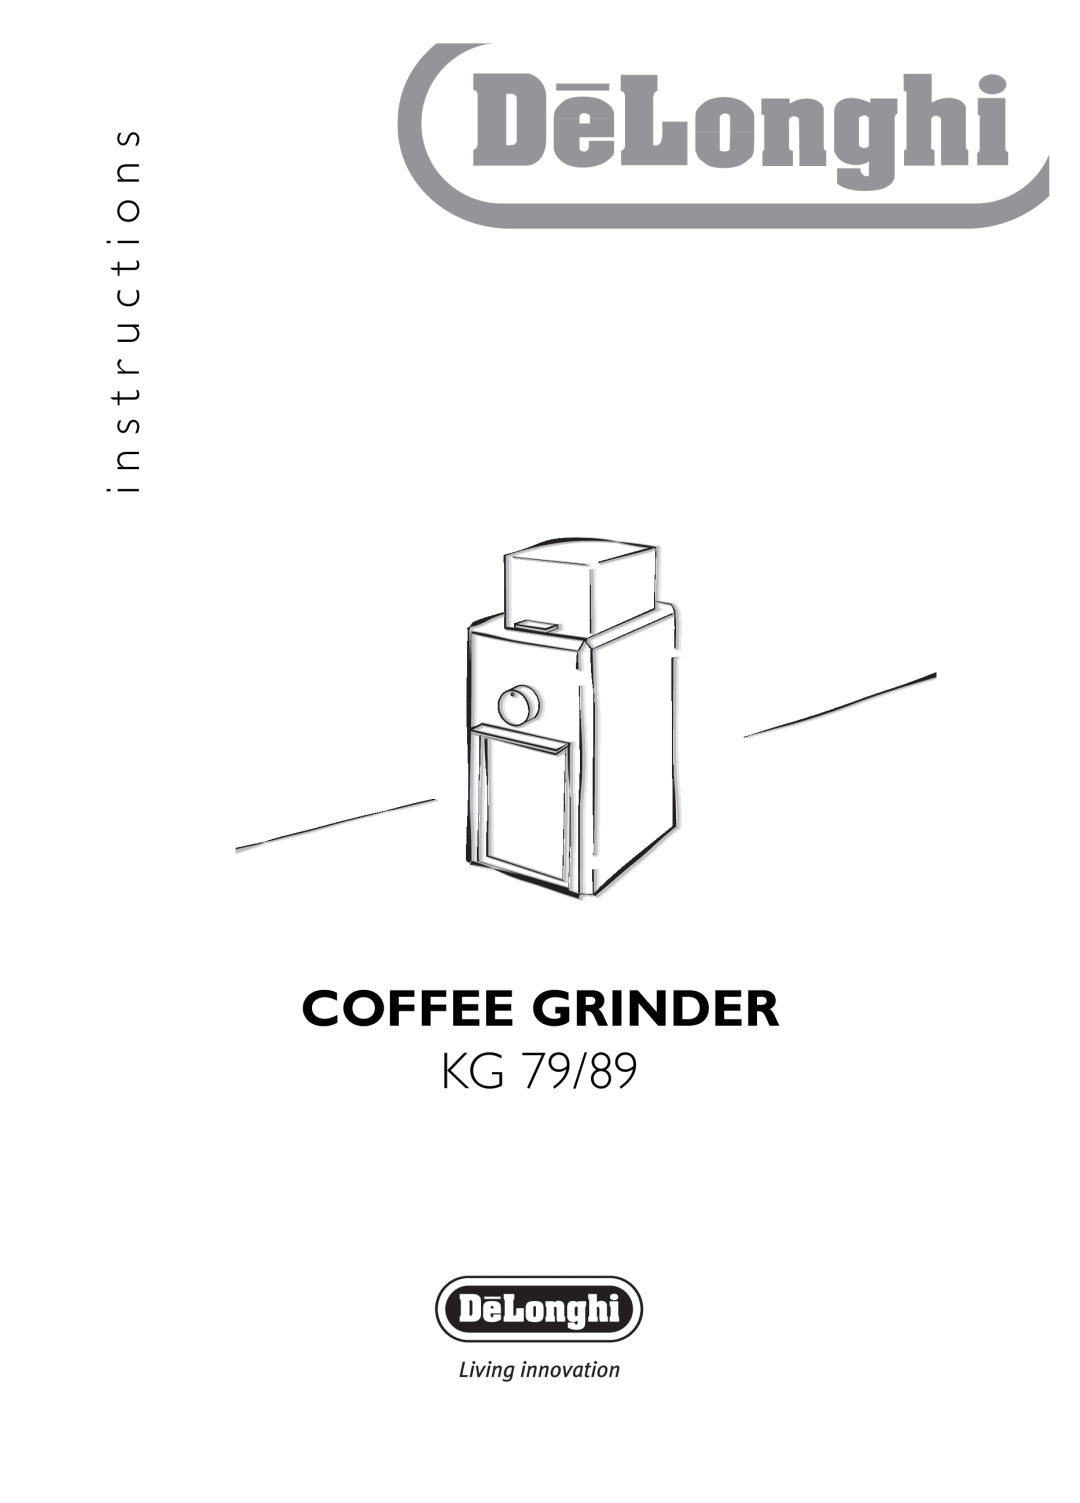 DeLonghi KG 89 manual i n s t r u c t i o n s, Coffee Grinder, KG 79/89 